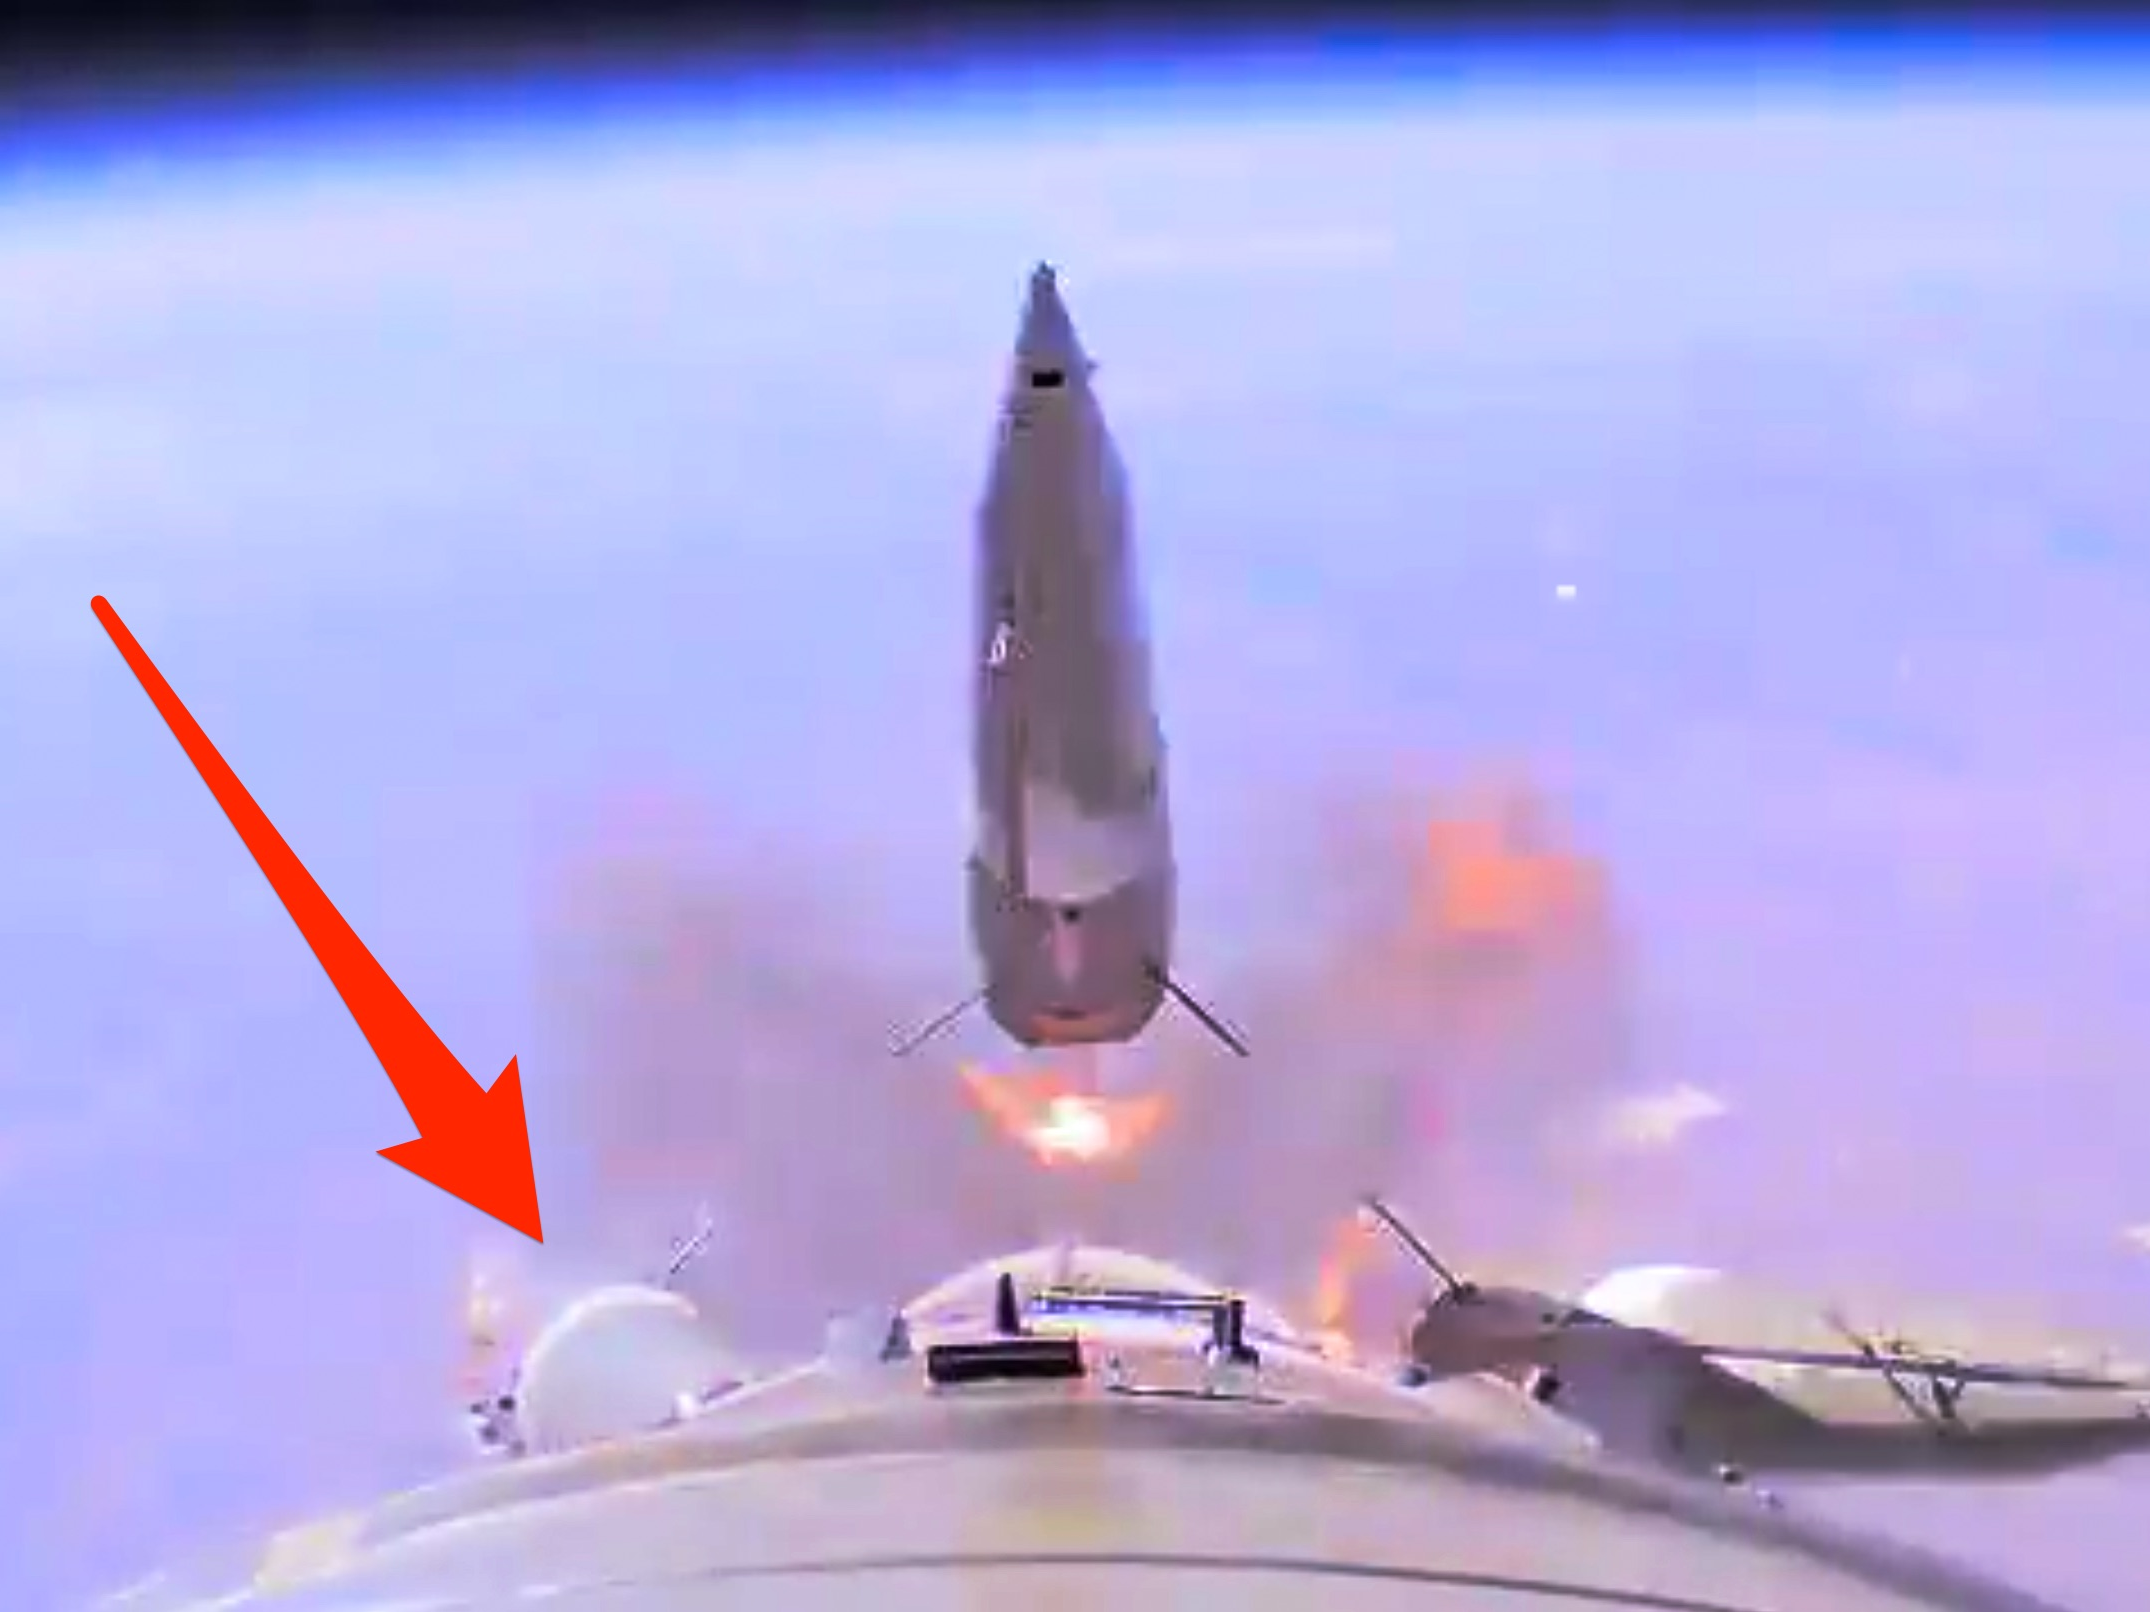 ソユーズ打ち上げ失敗の瞬間を捉えた動画